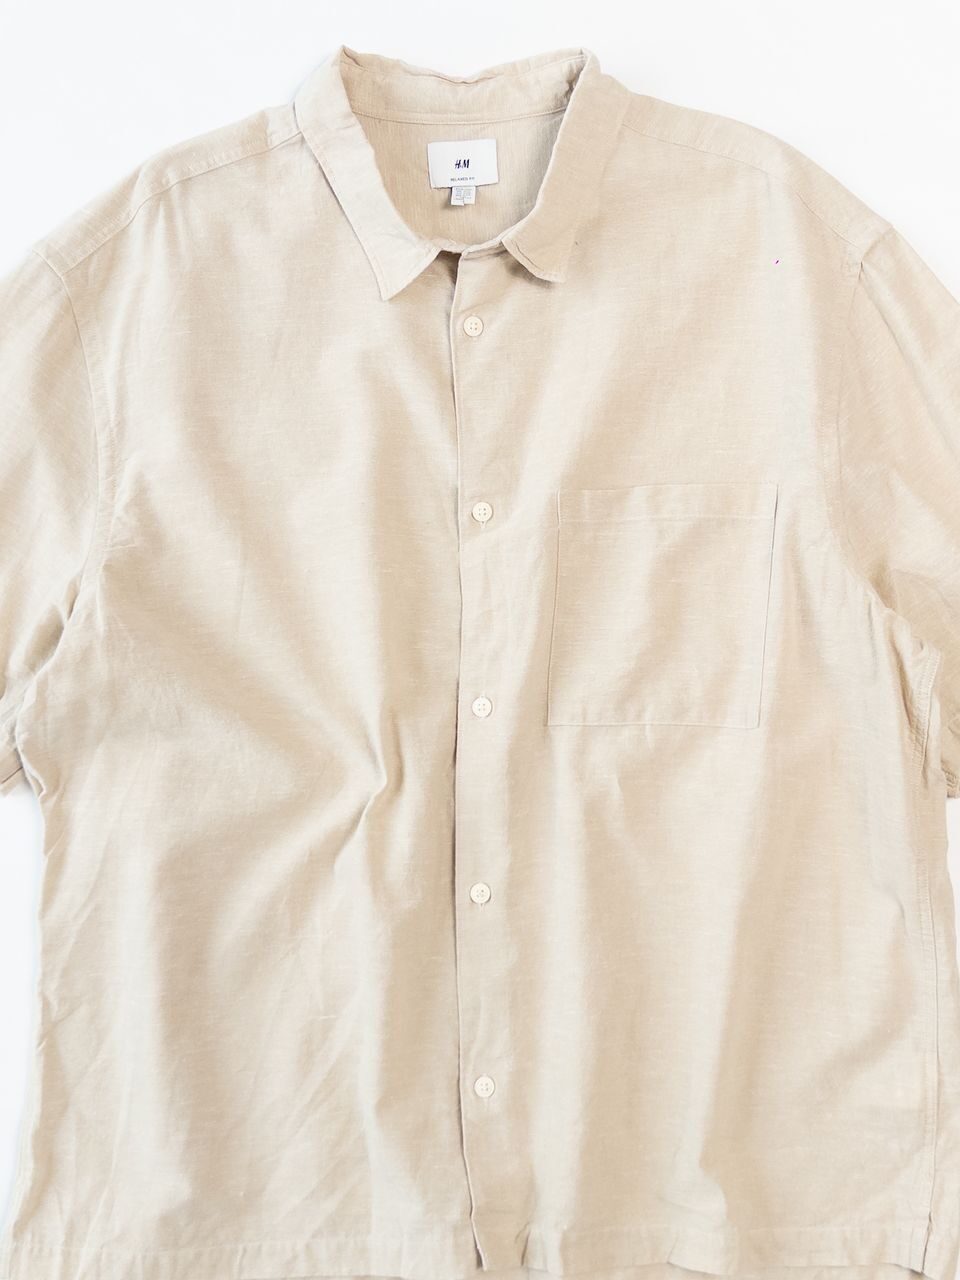 Рубашка хлопок 70% лен 30% мужская с коротким рукавом/карманом цвет бежевый размер XXL (ПОГ 69 см)  H&M